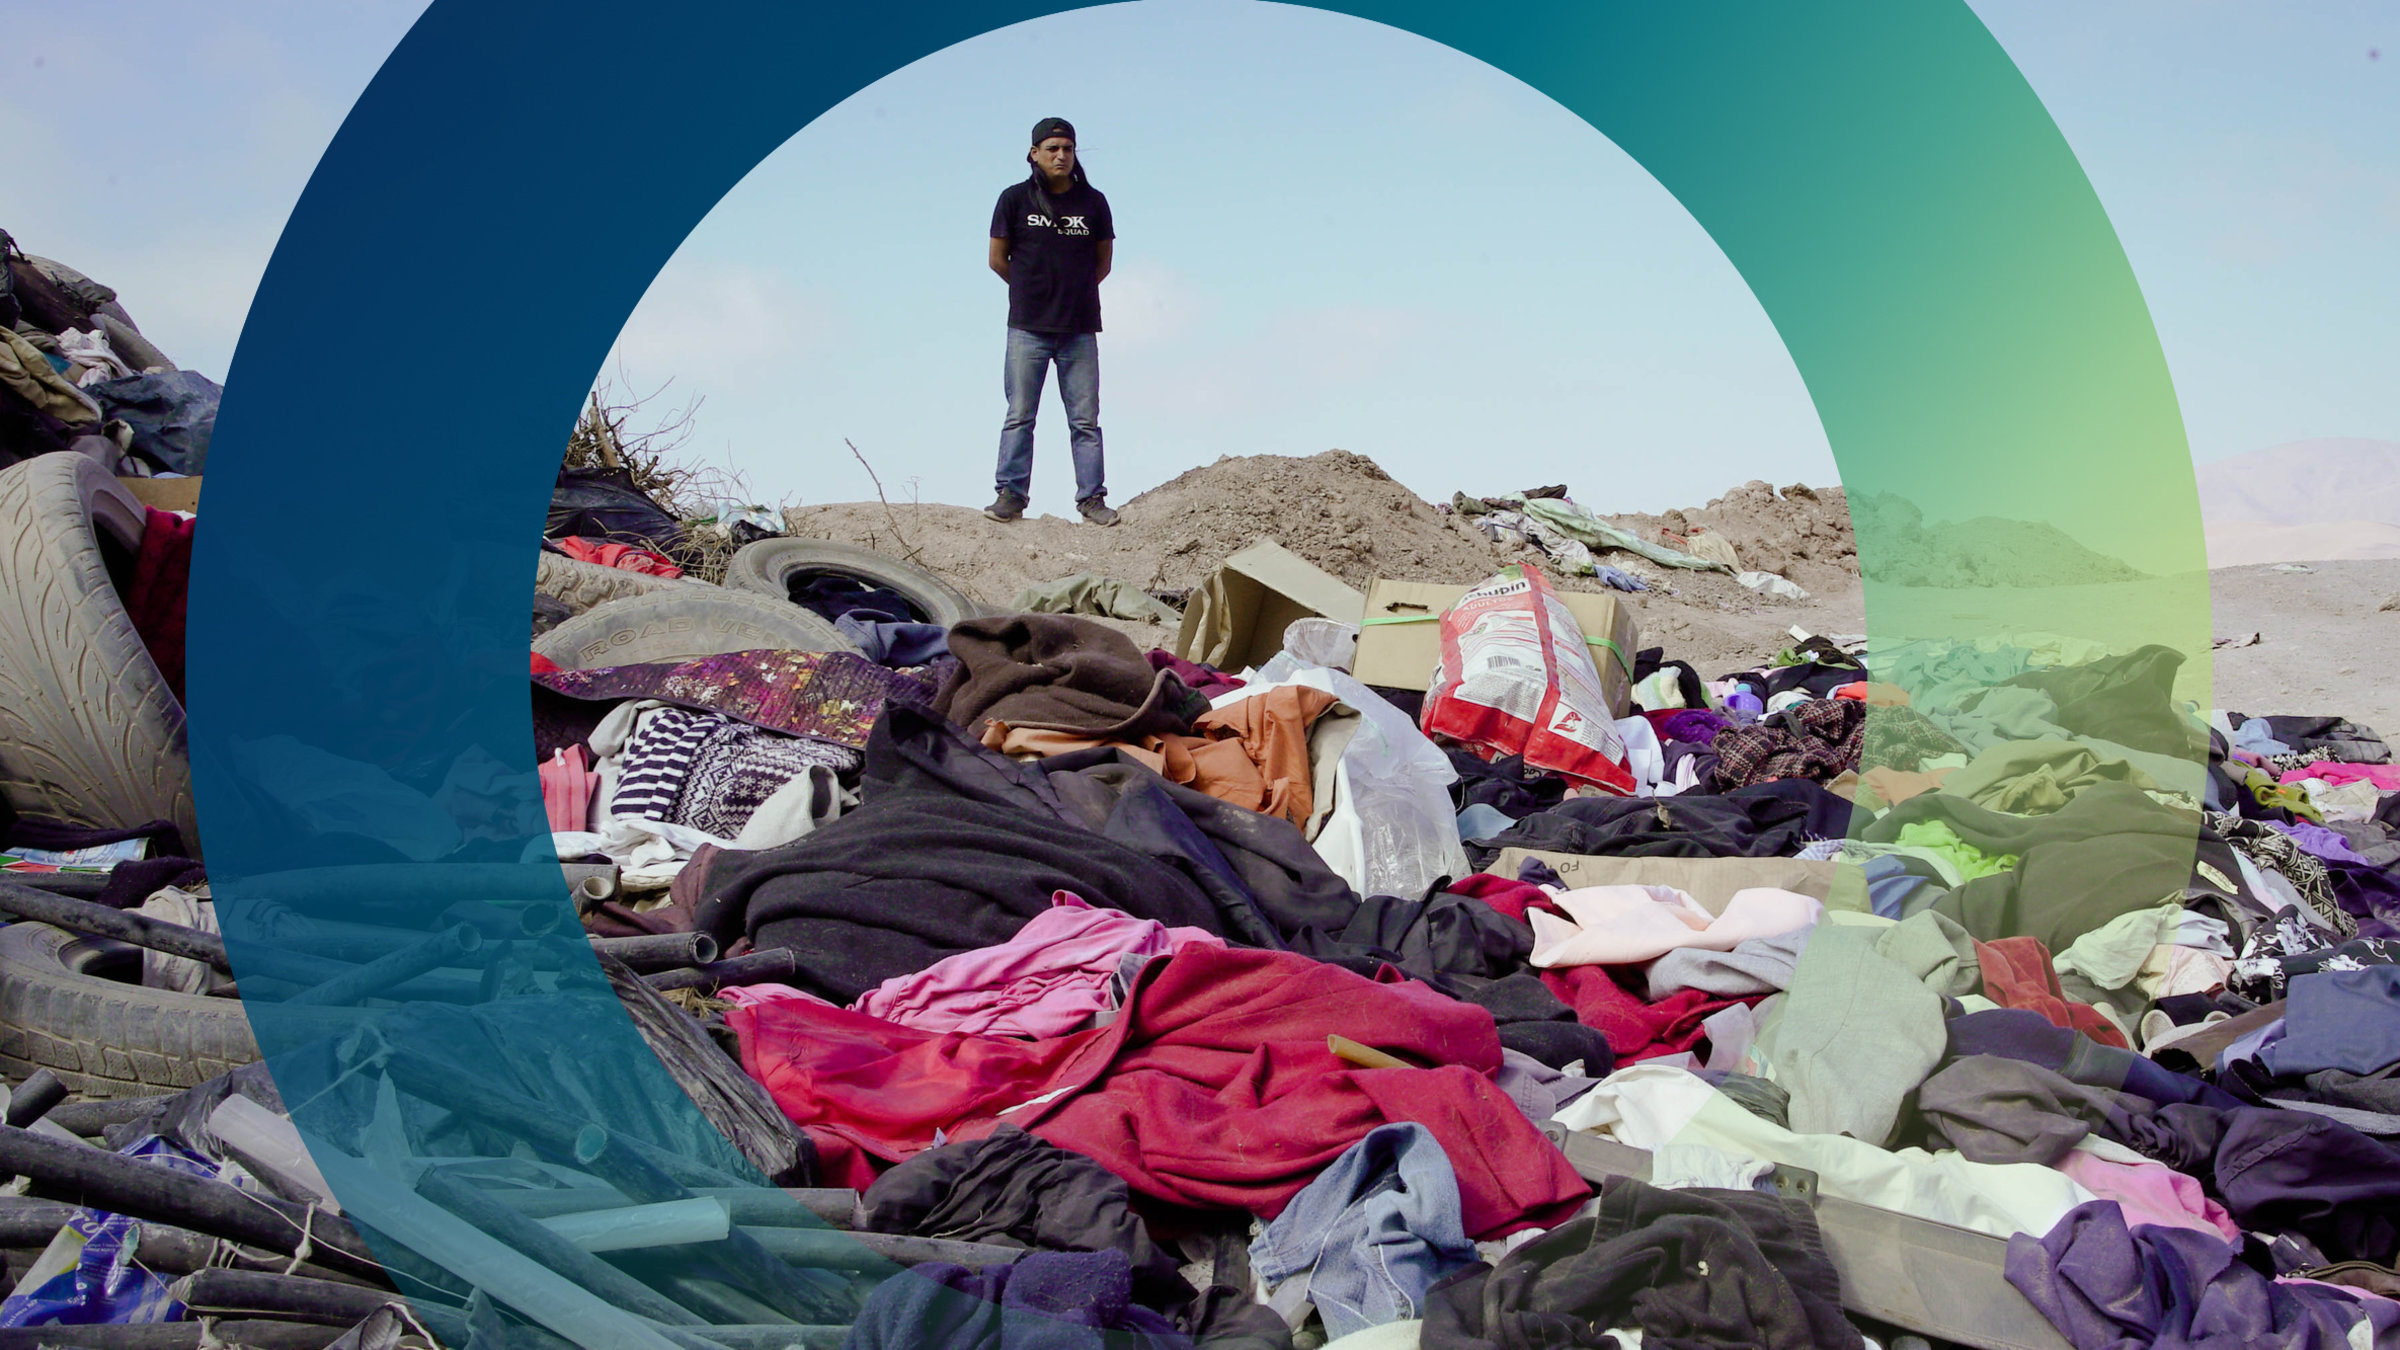 "planet e.: Textilmüll – Der Kampf gegen Wegwerfmode": Juan José Saldaña steht vor den Kleidungsstücken, die in der Wüste abgeladen wurden.